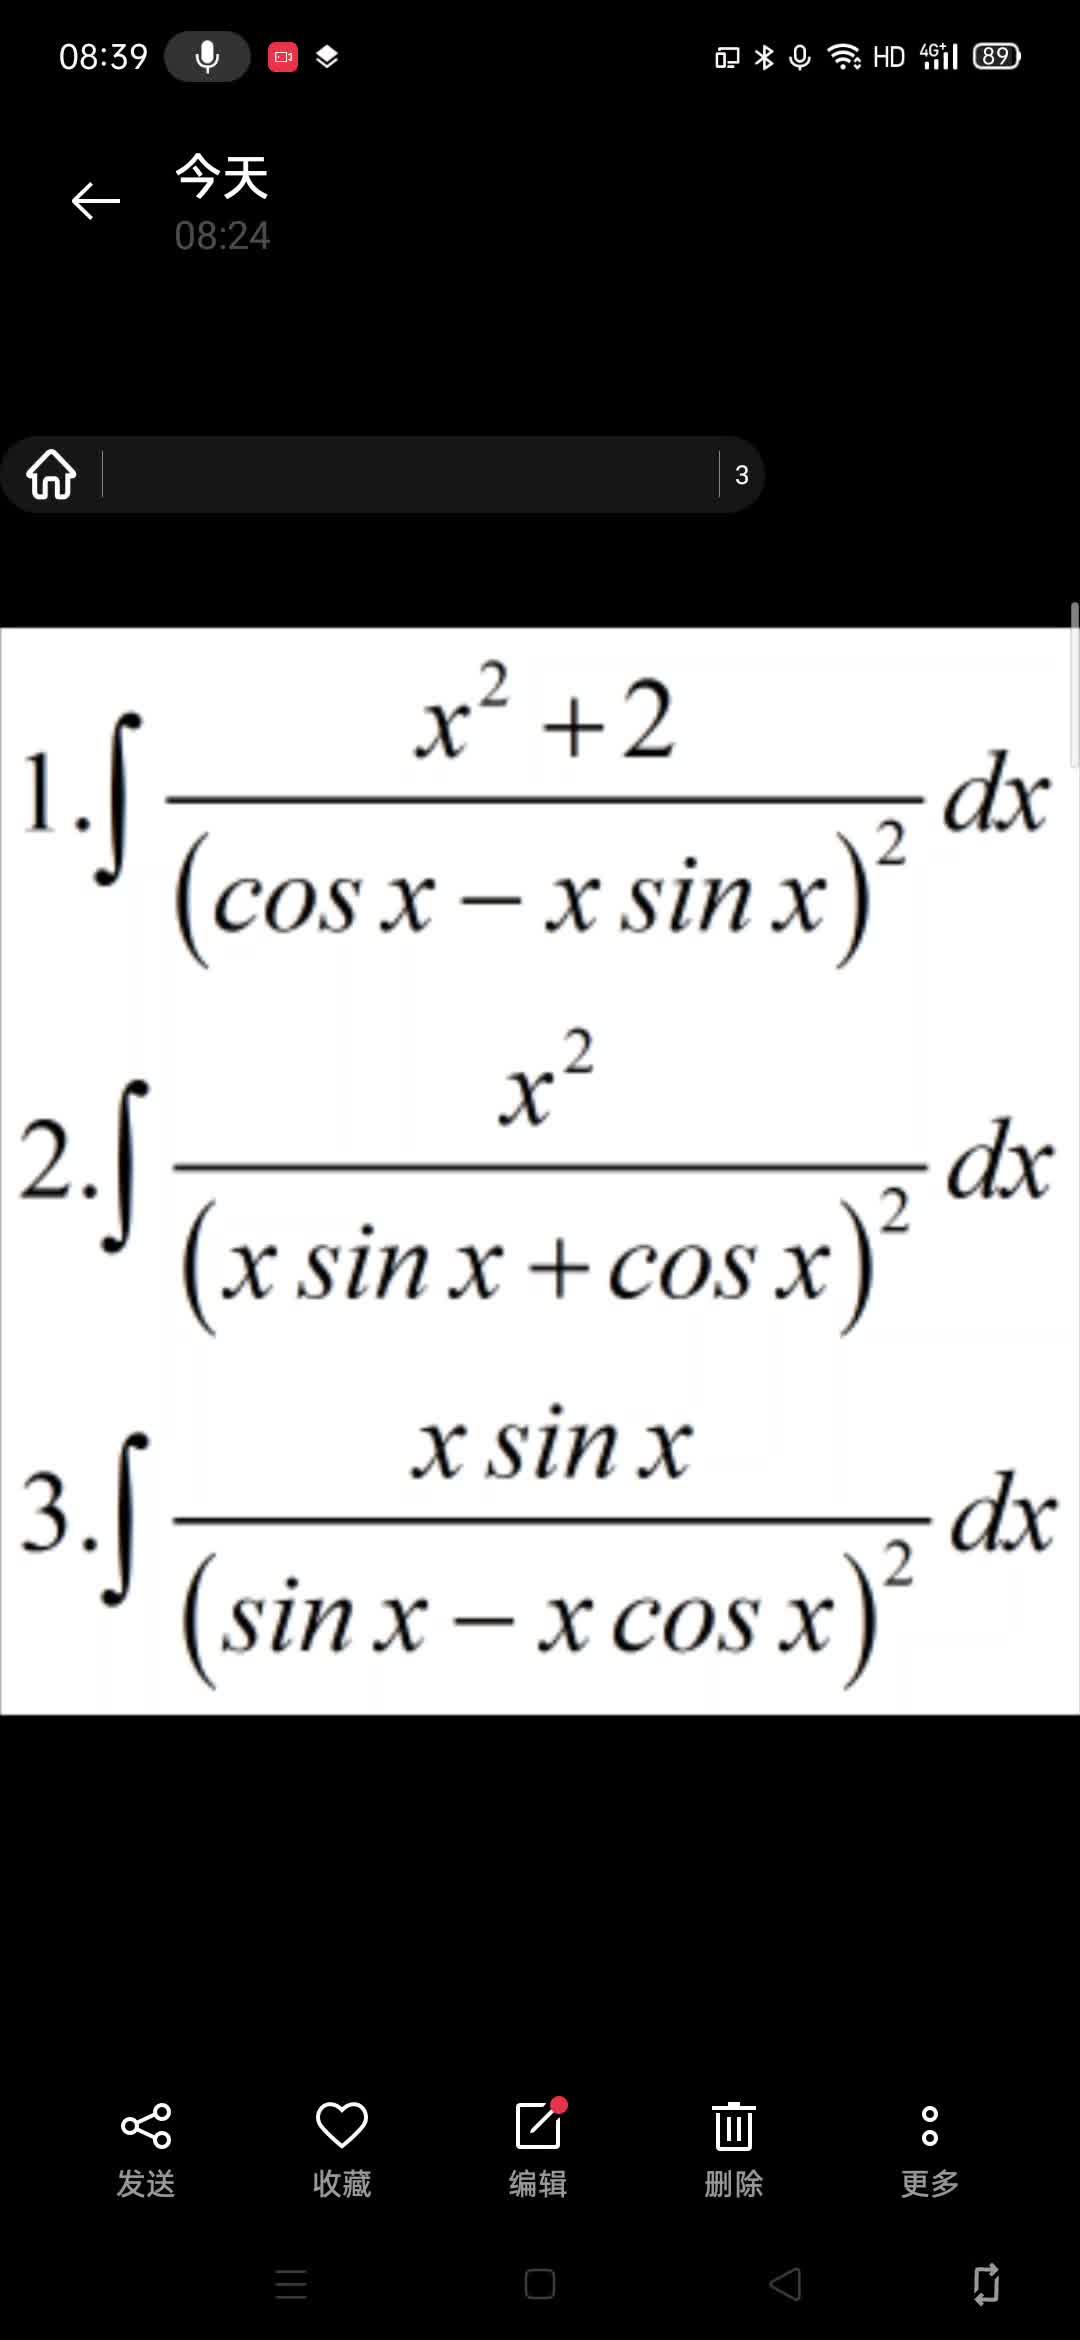 反双曲正弦函数arcsinhx不定积分万能公式,